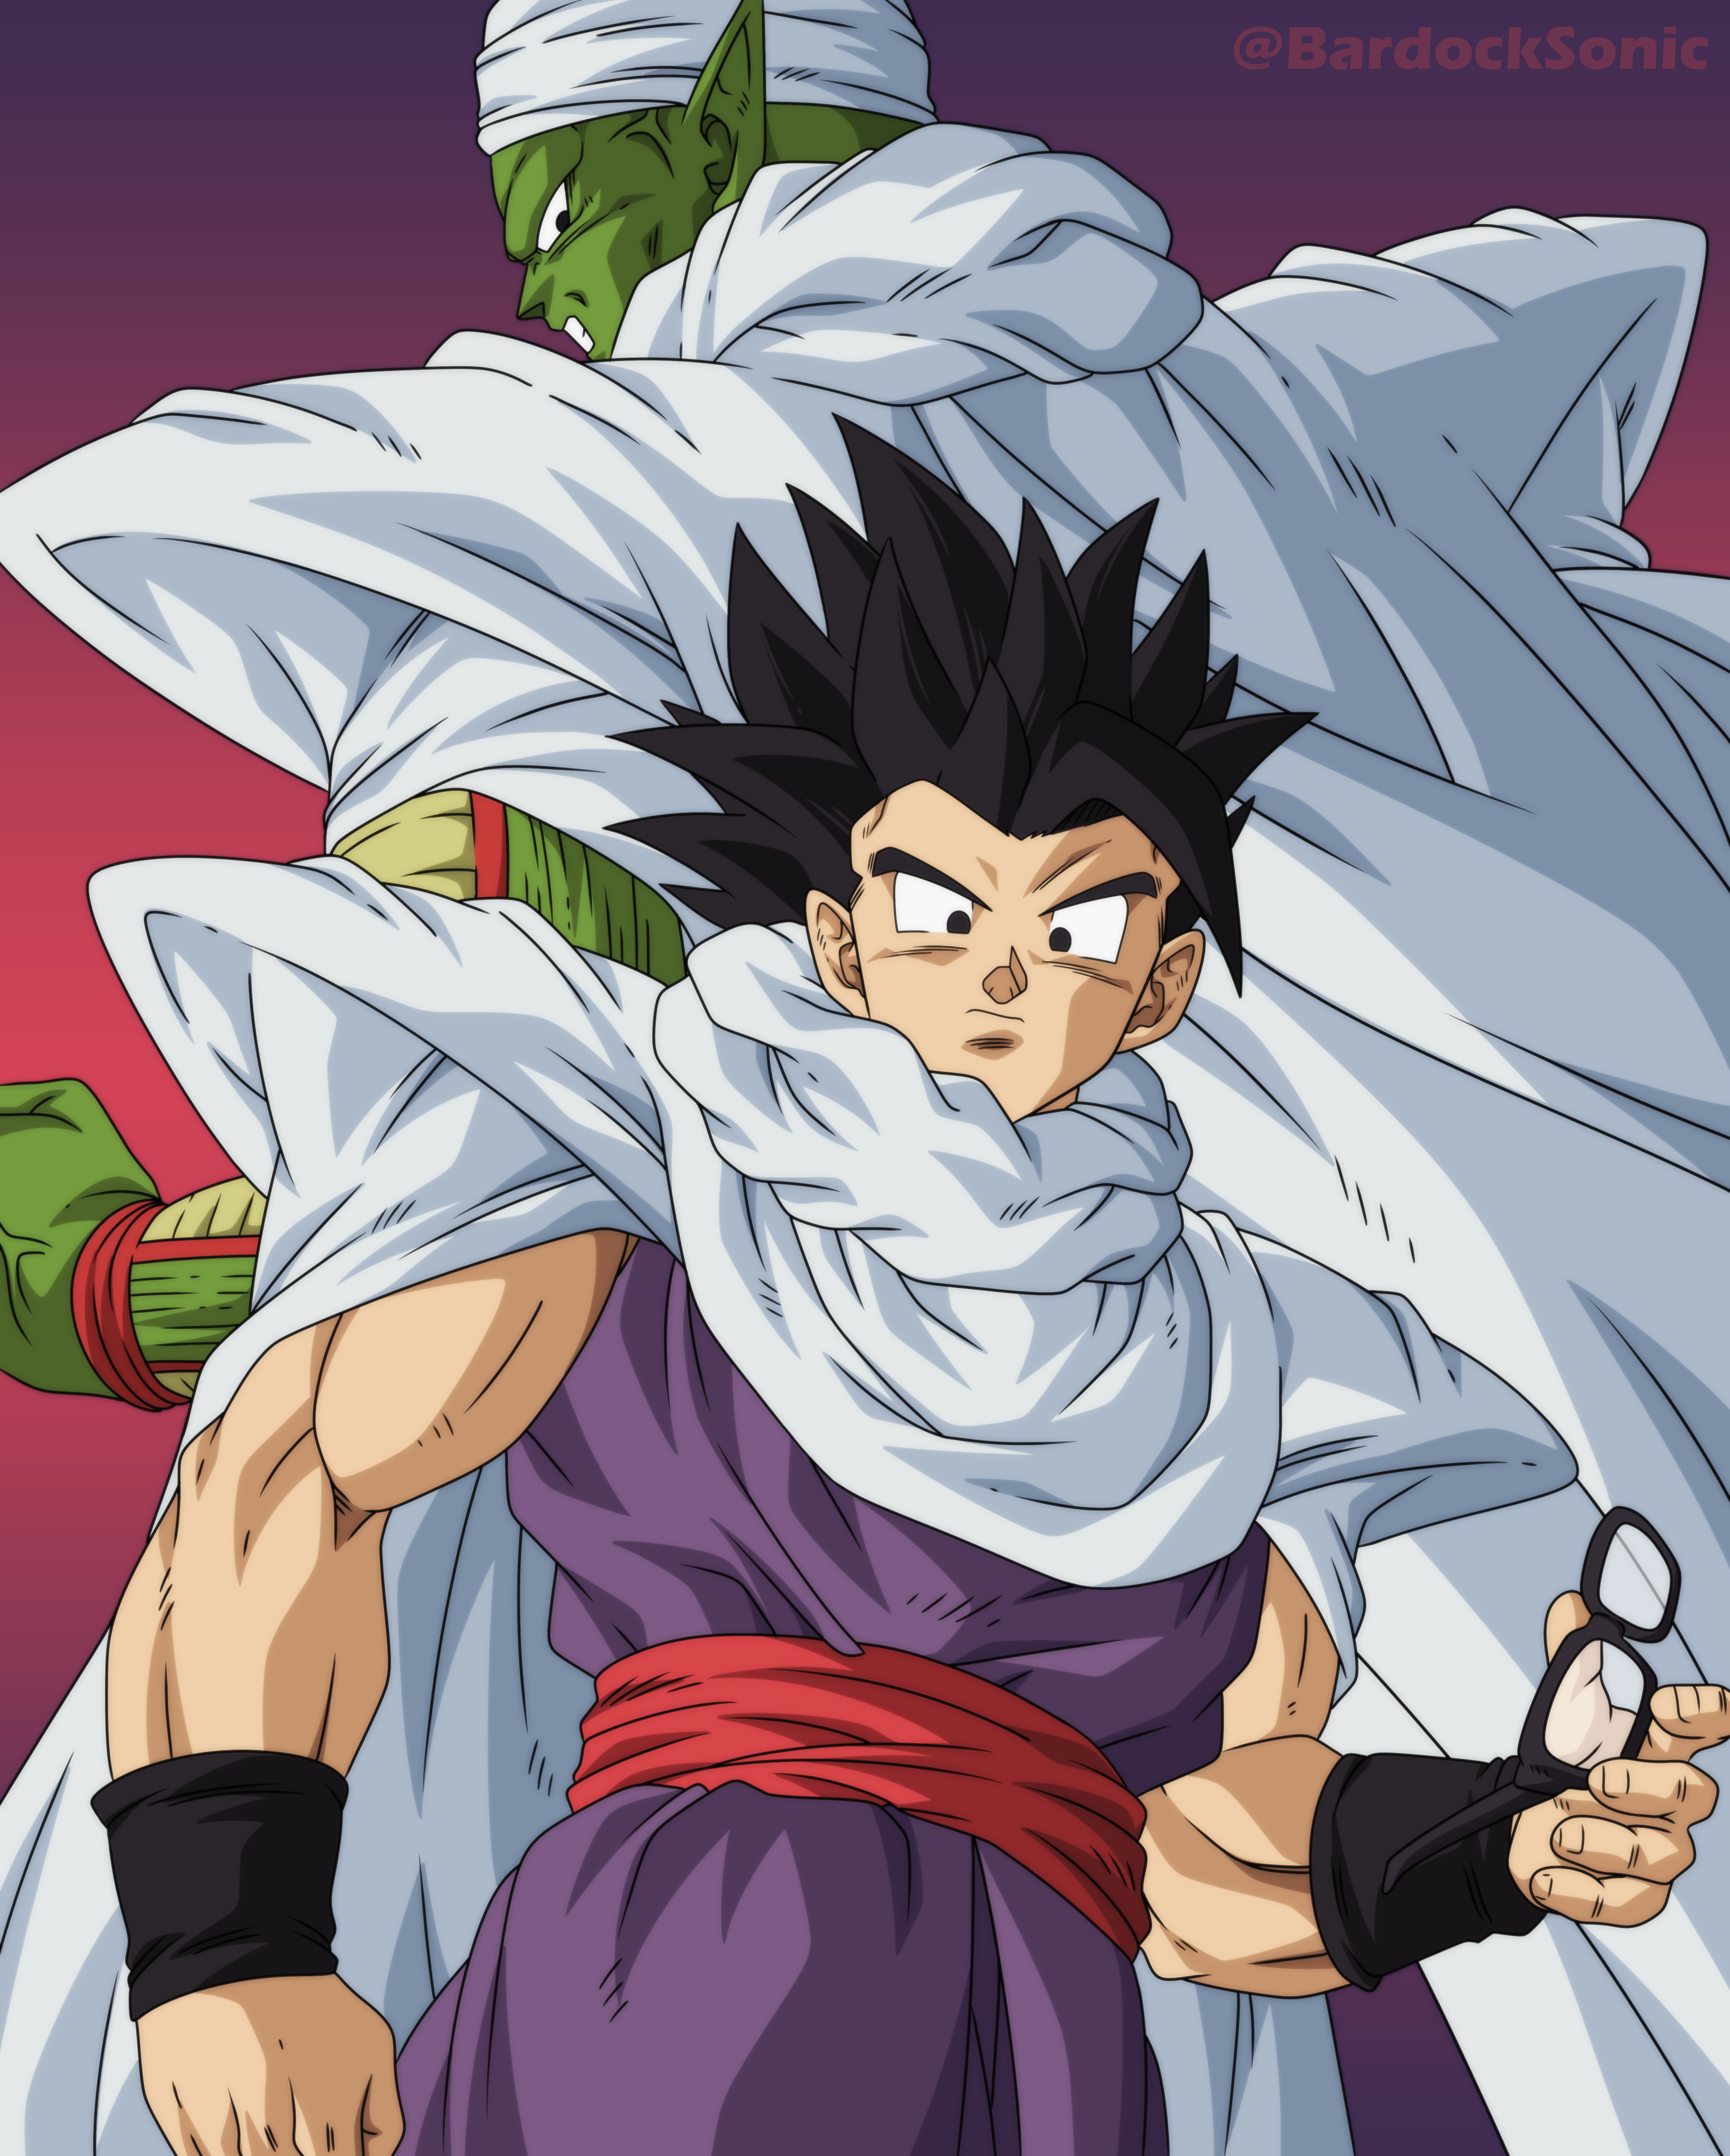 Piccolo Dragon Ball Super Super Hero by BardockSonic on DeviantArt